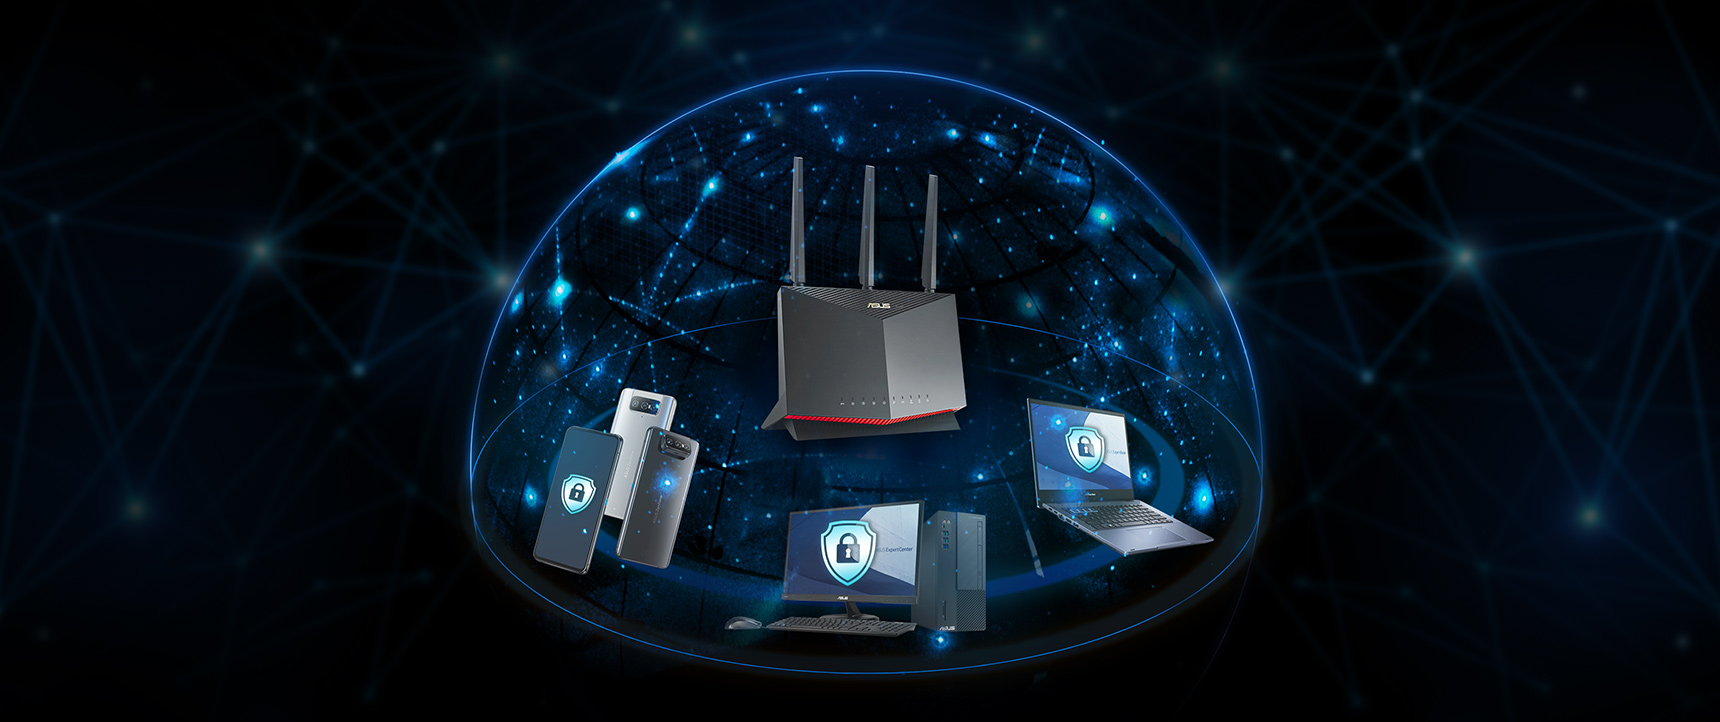 La plupart des routeurs ASUS intègrent la technologie AiProprotection optimisée par Trend Micro™, qui garantit la protection de tous les périphériques de votre réseau d'entreprise